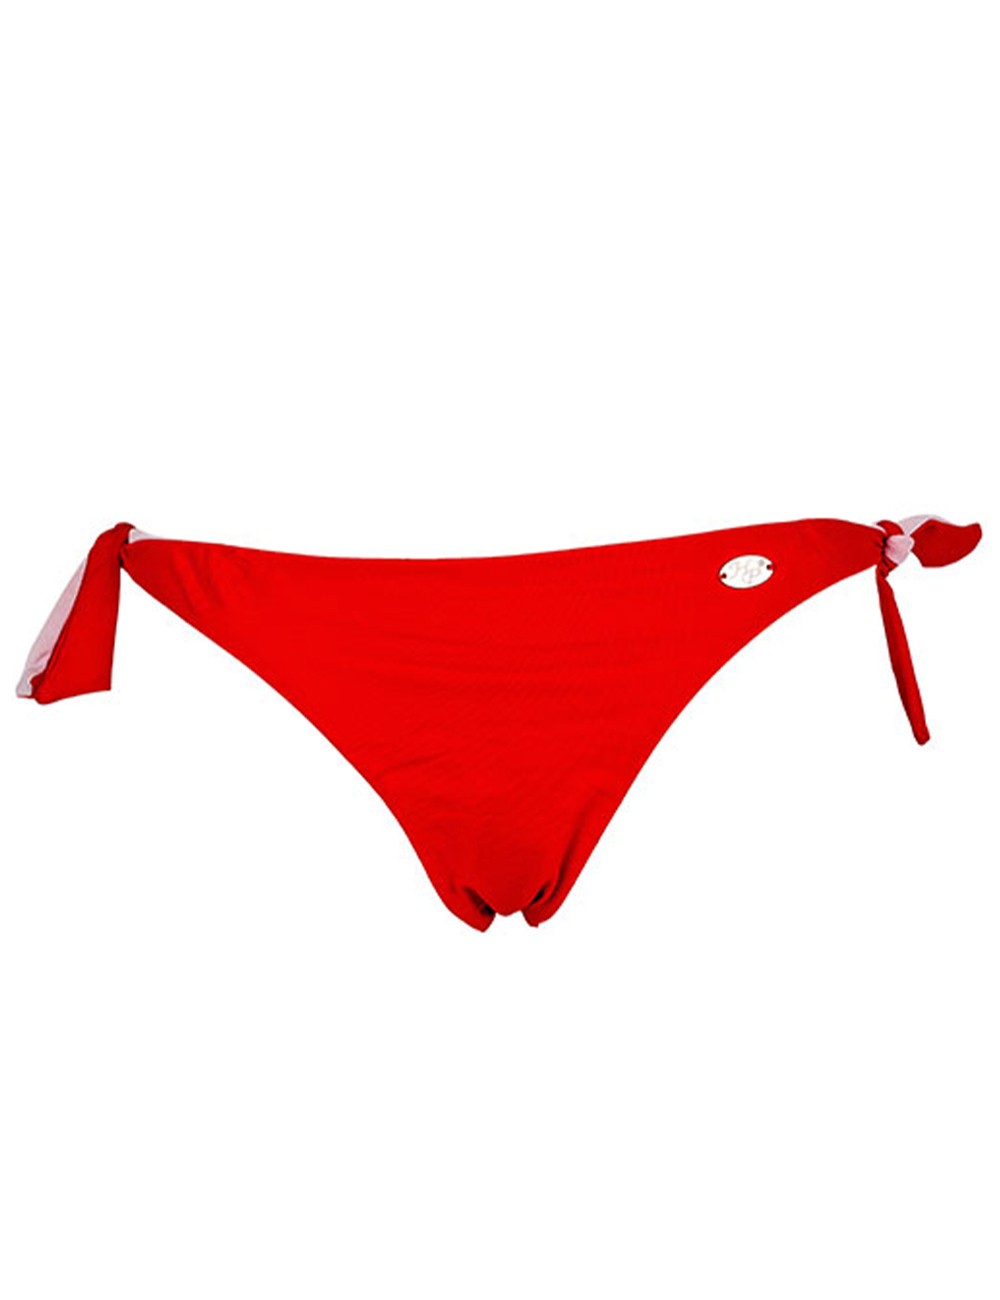 Bas de maillot de bain femme brésilien tanga uni rouge